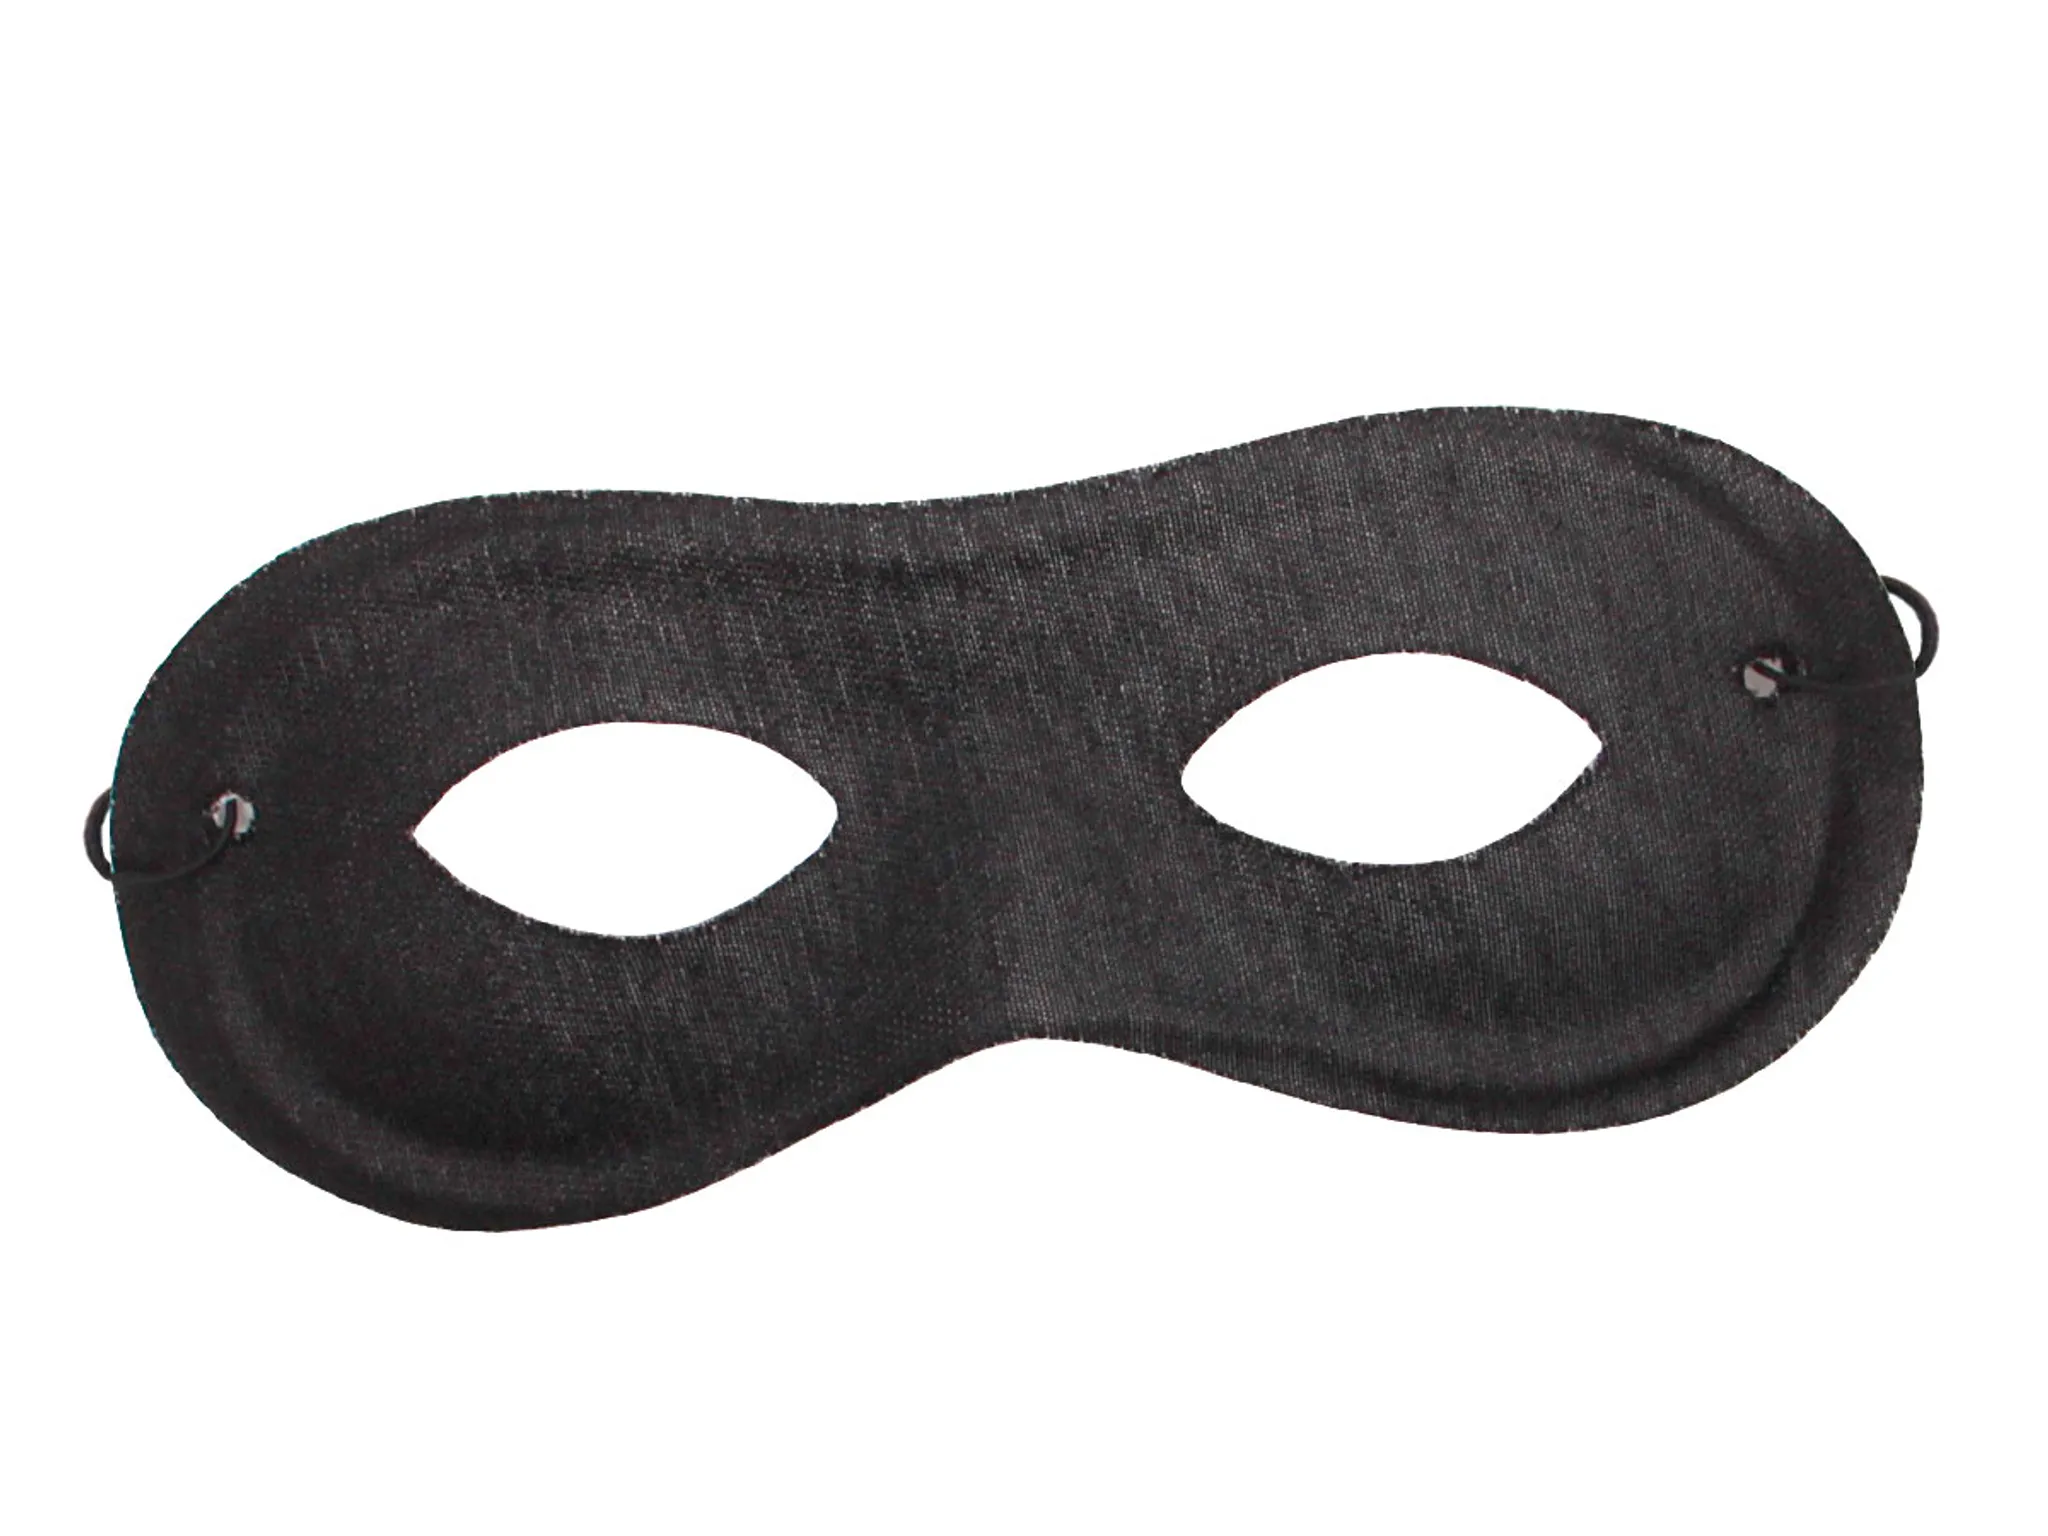 Banditen Kostüm Bandit 2-teiliges Set Räuber Verkleidung Maske Hut Fasching  Karneval Outfit Zubehör Accessoire 